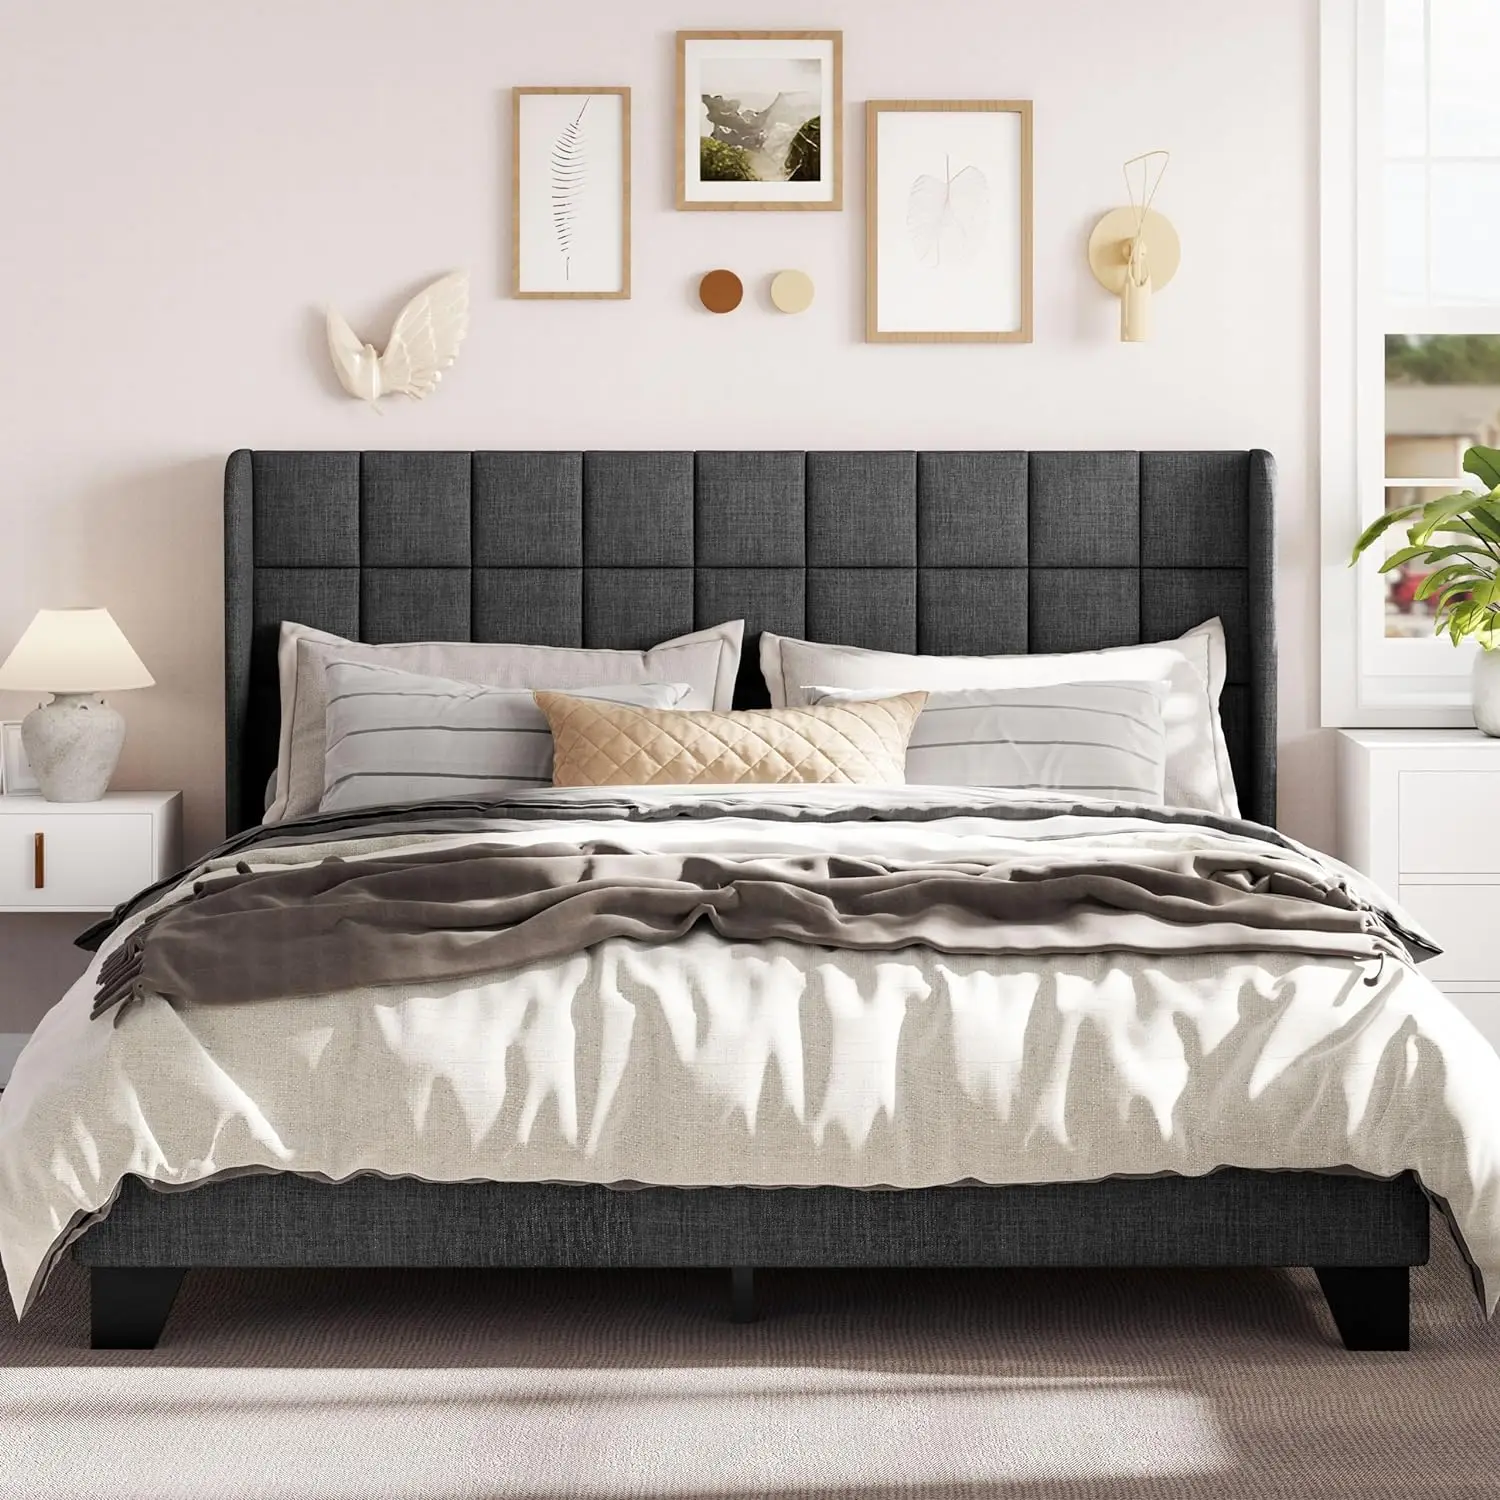 

Оправа кровати на платформе большого размера со спинкой, мягкая квадратная сшитая изголовье кровати и деревянные полосы темно-серого цвета